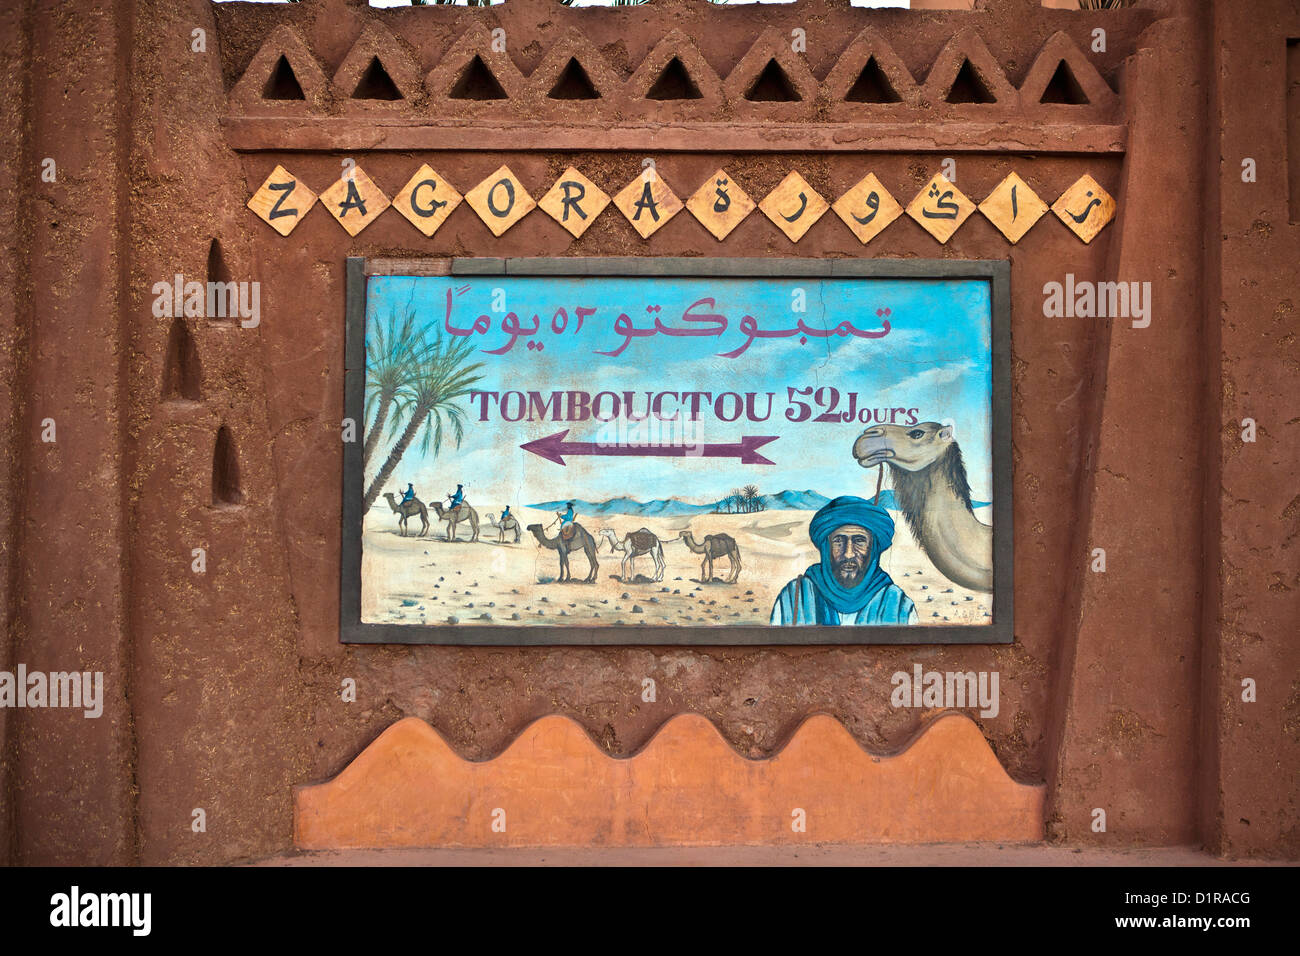 Il Marocco, Zagora, strada segno del cammello Tombouctou 52 jours. Timbuctu 52 giorni. Foto Stock